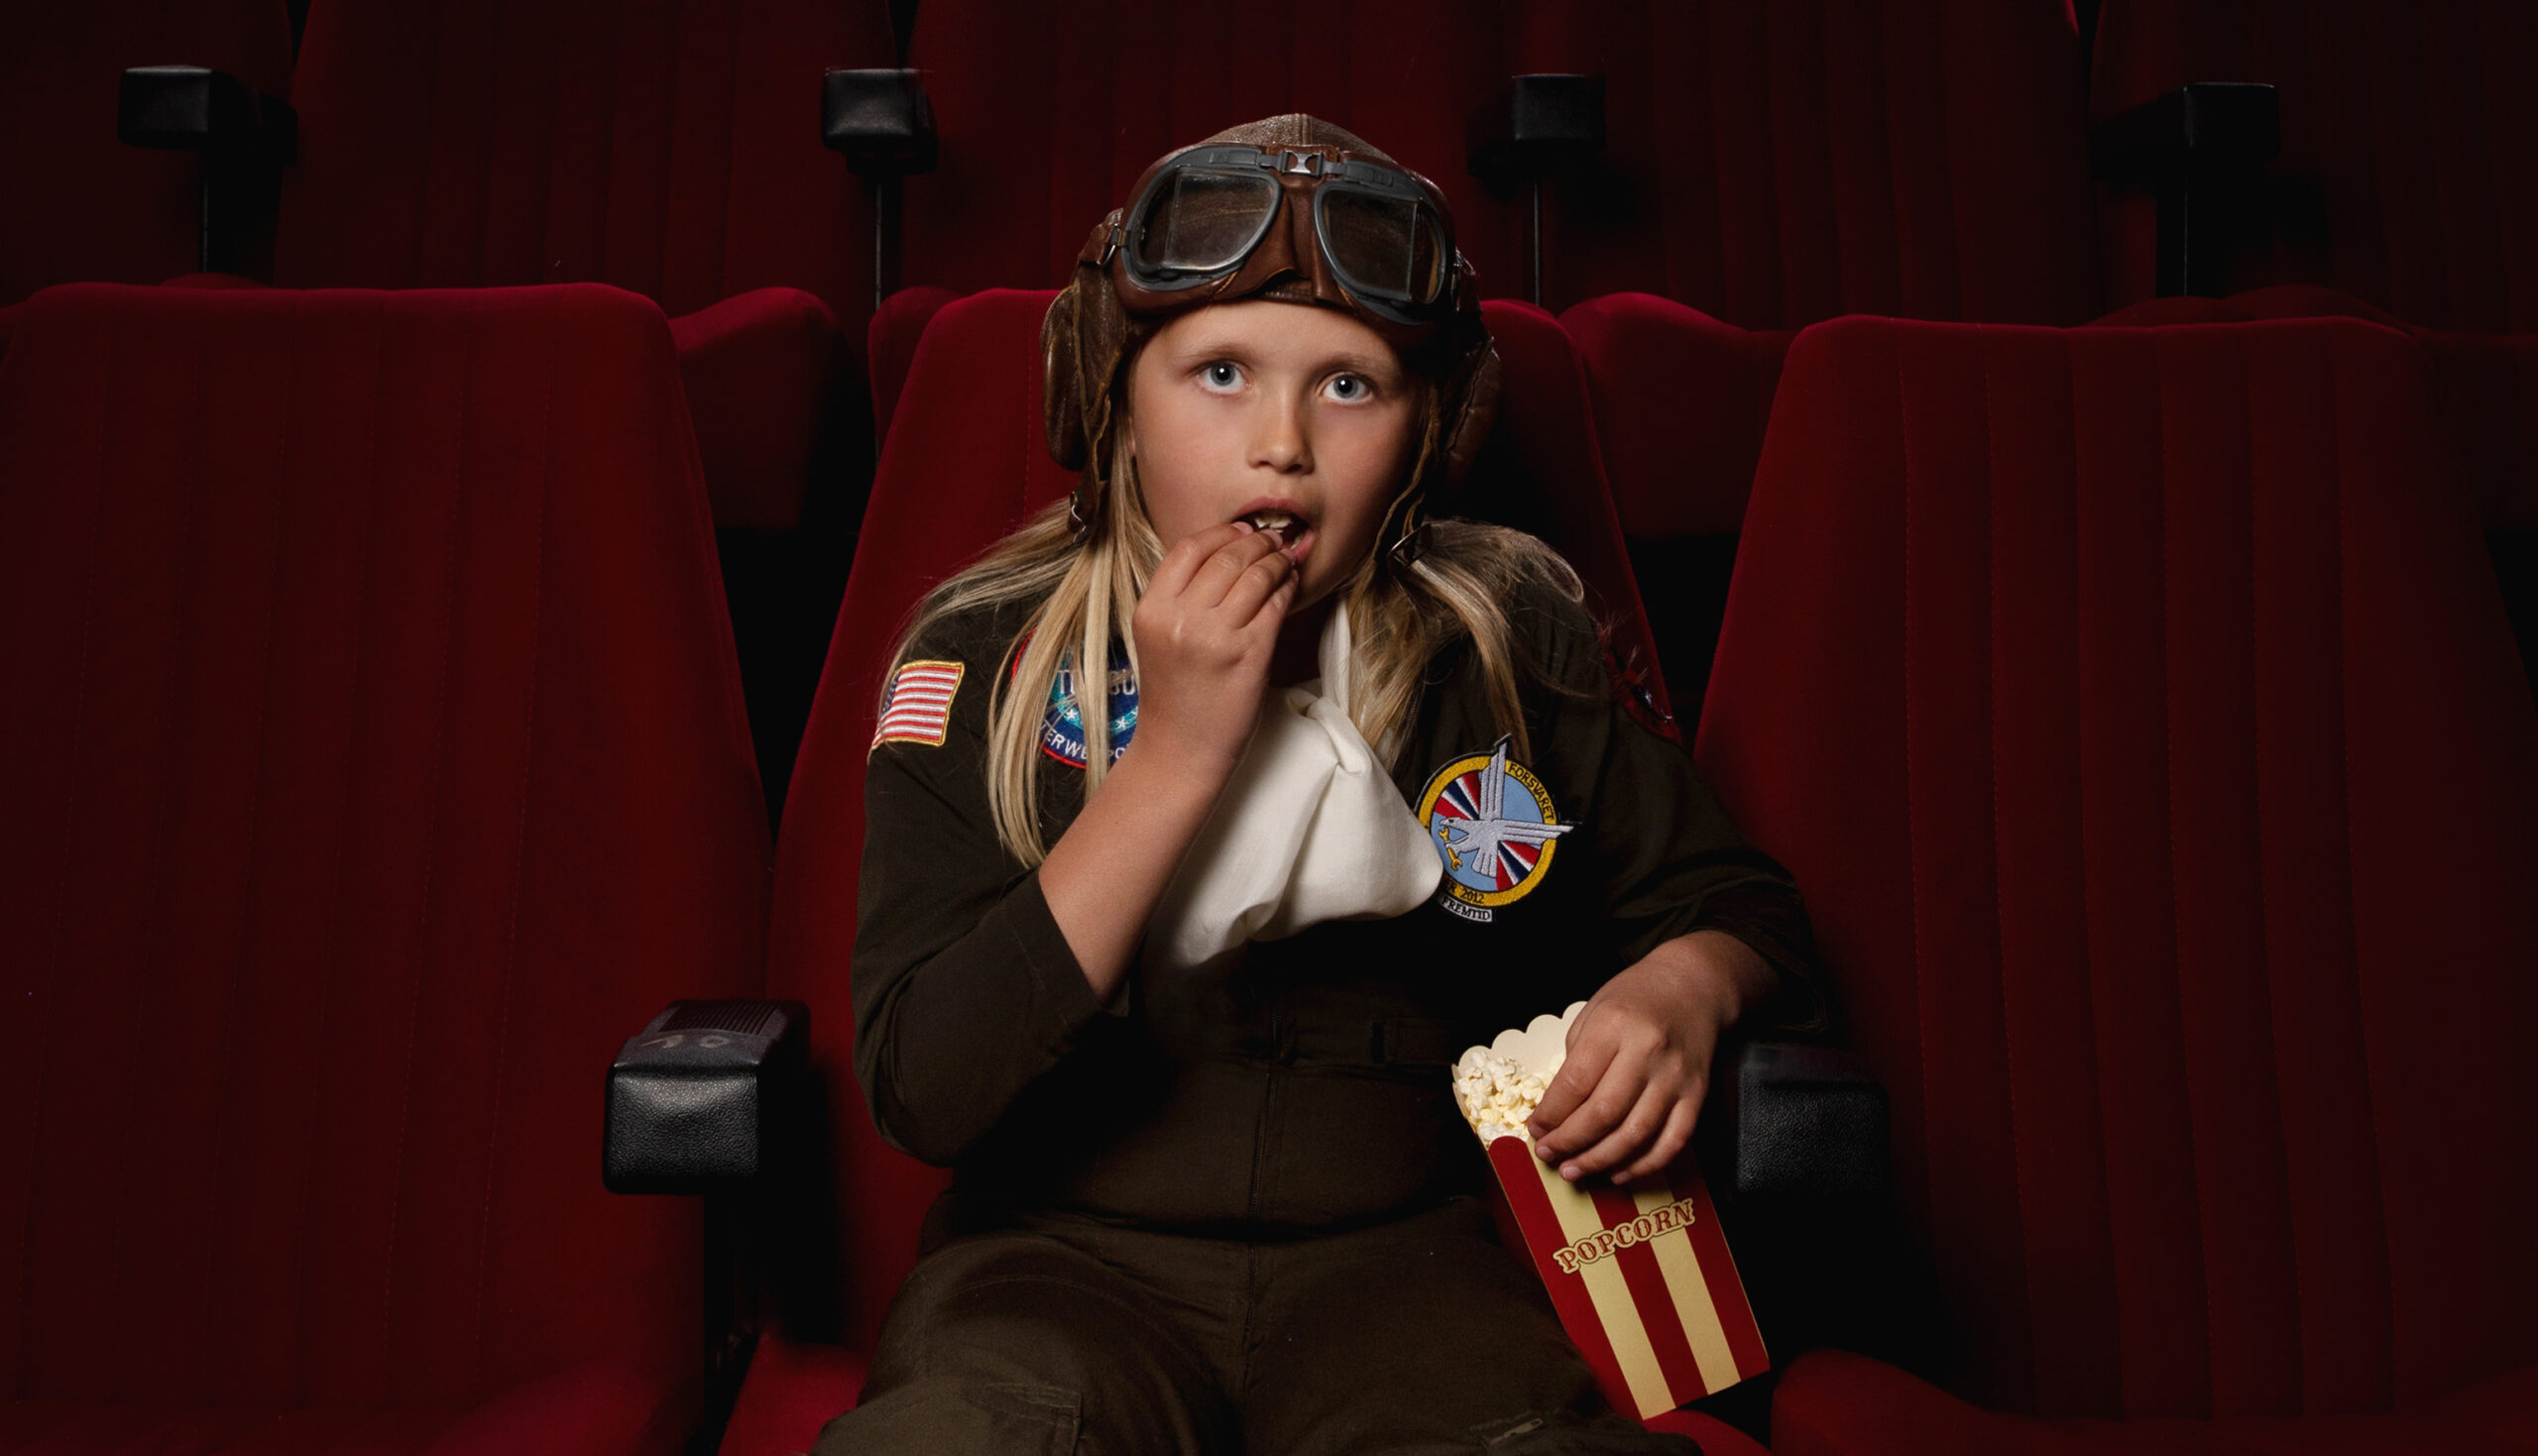 Bilde av jente i pilotdrakt som spiser popcorn i en kinosal